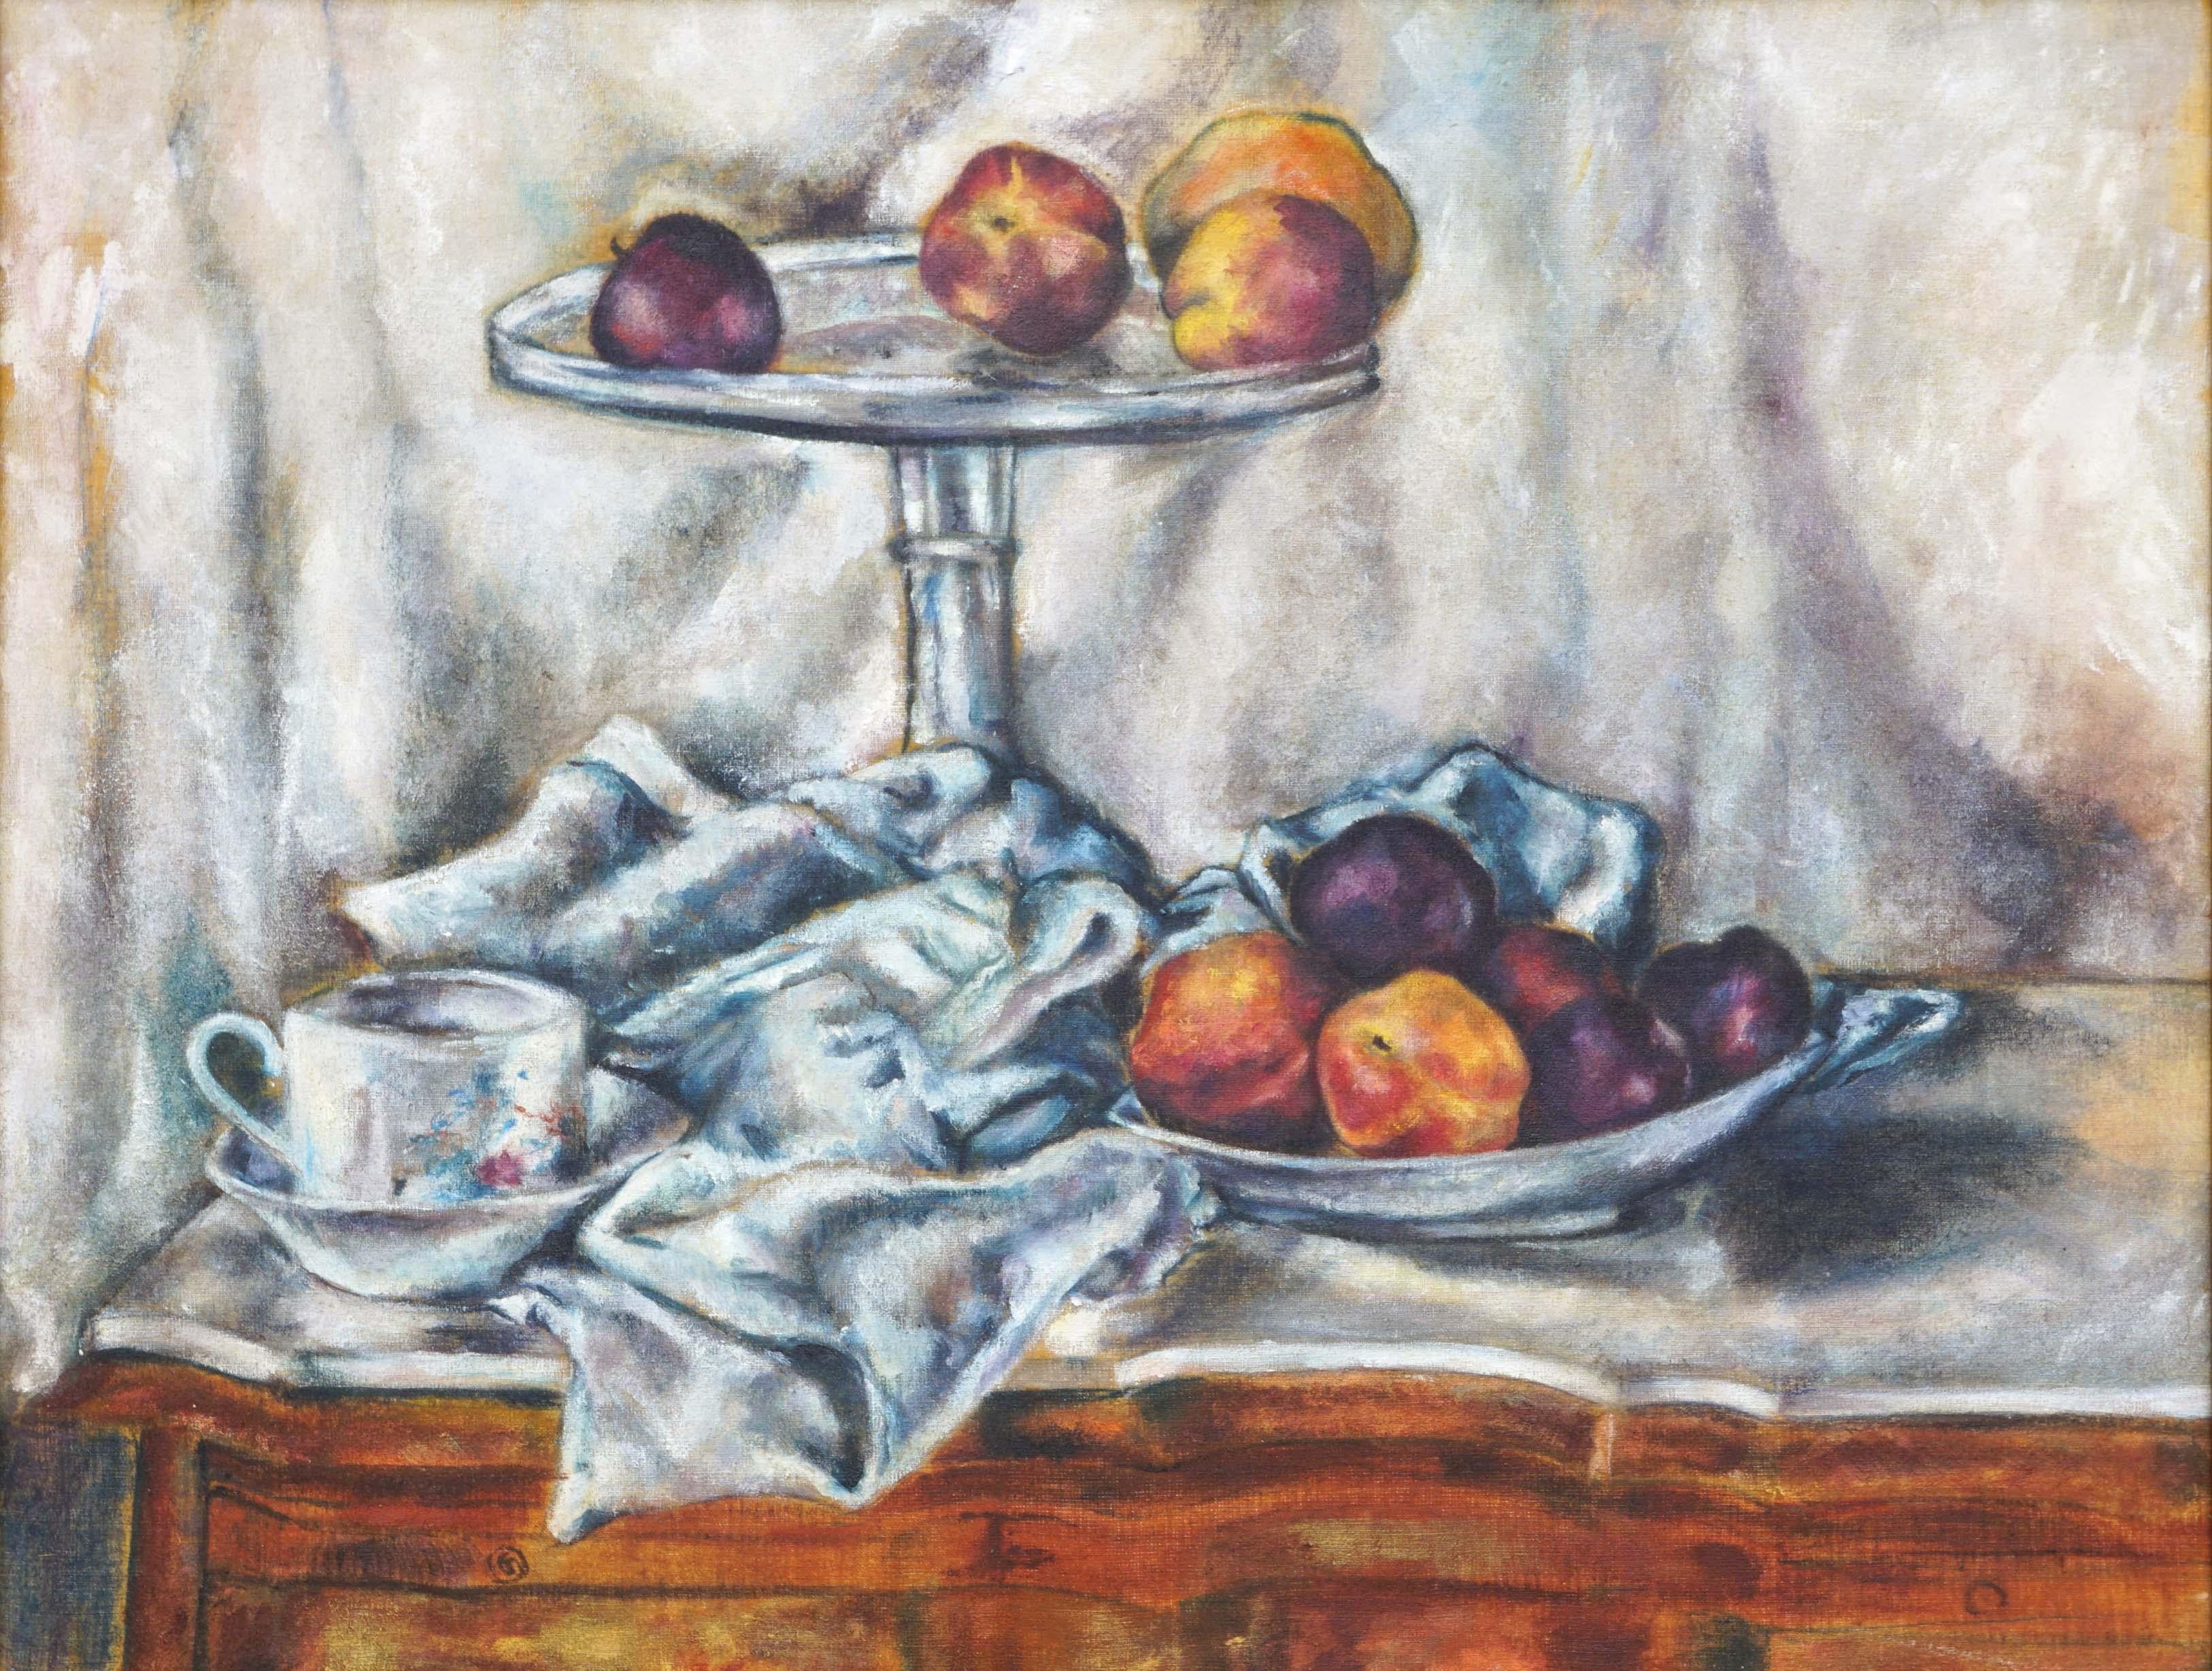 Pfirsich- und Pflaumen-Stillleben im Stil von Paul Cezanne – Painting von Unknown